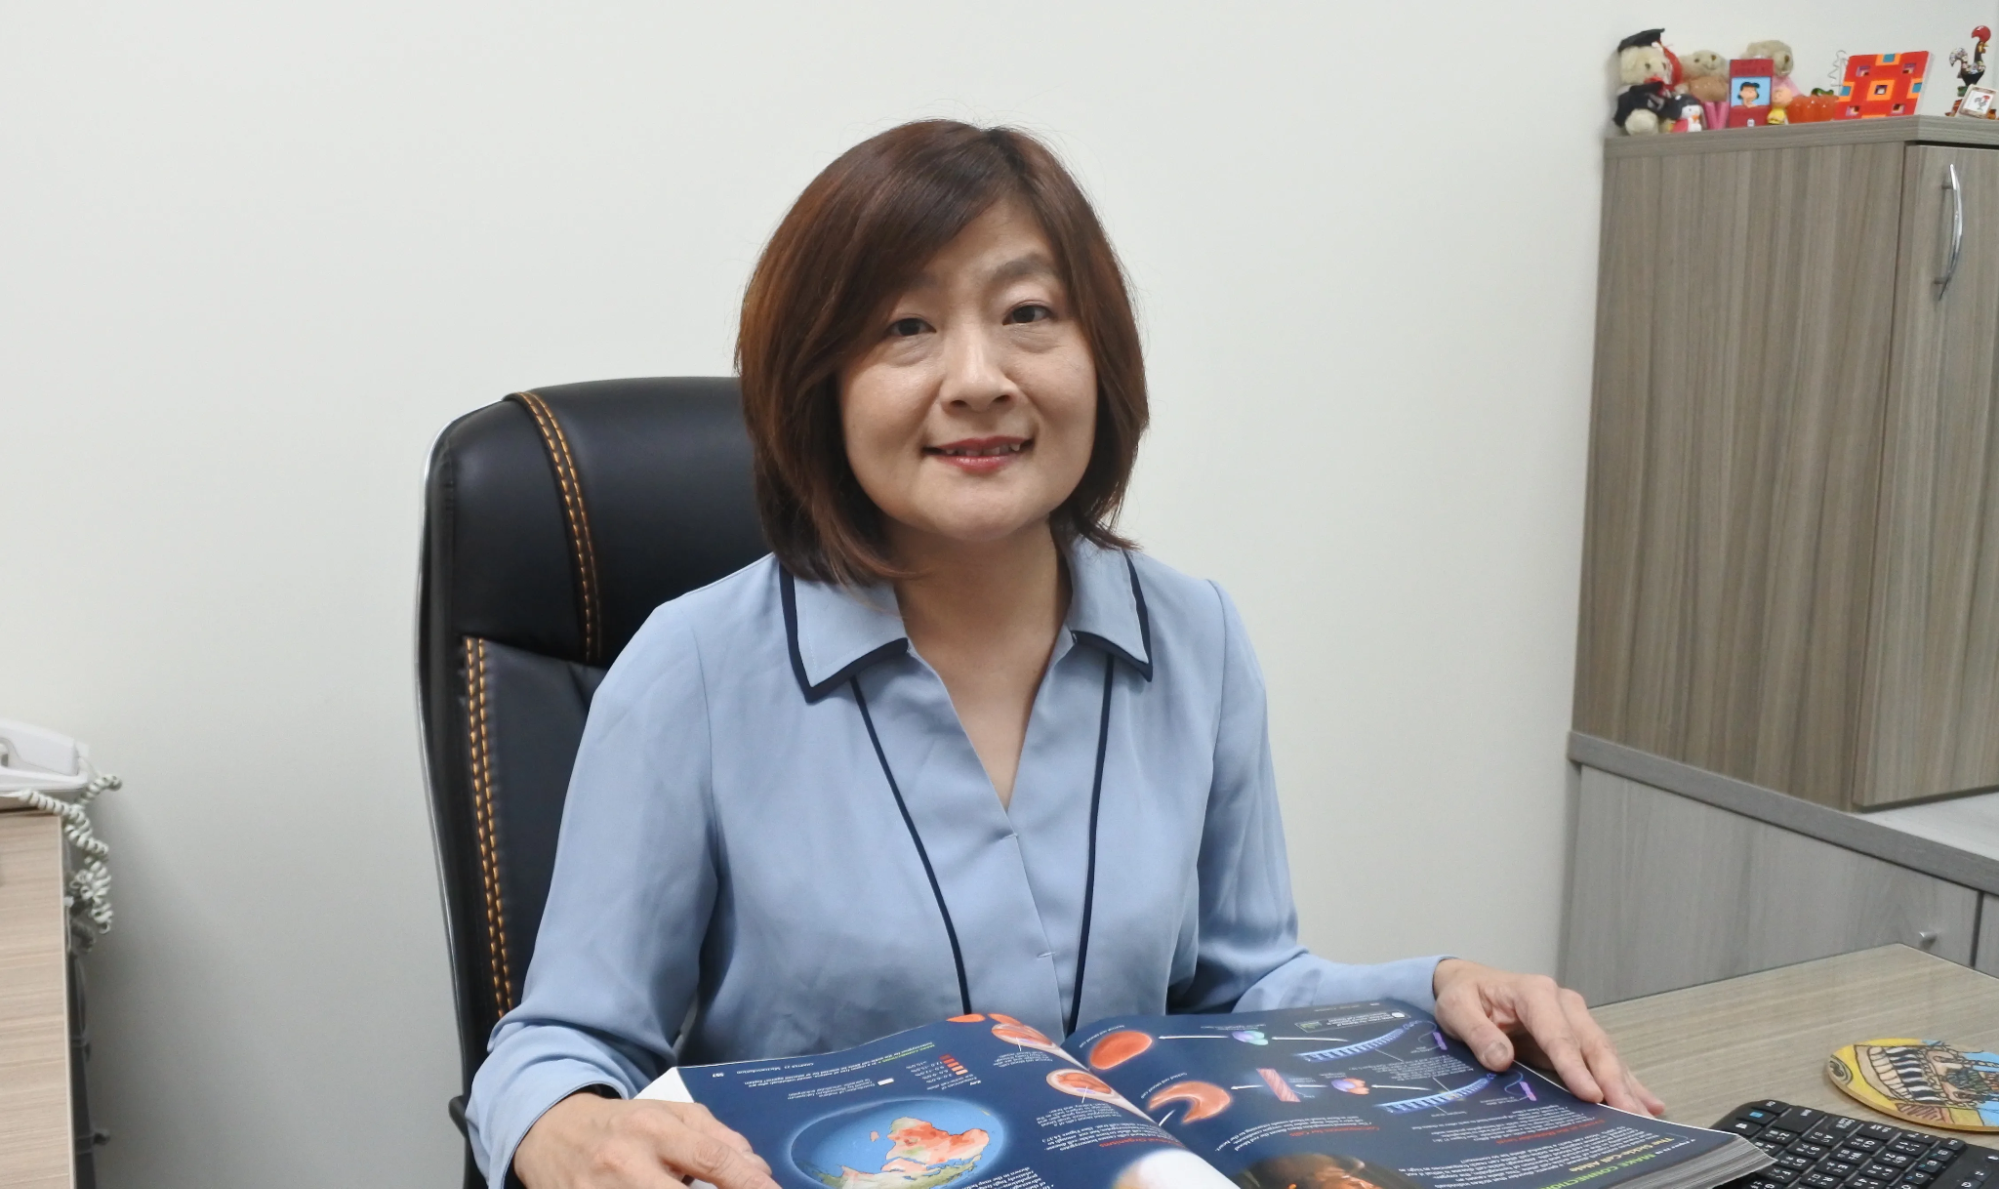 Dr. Vivian Yang